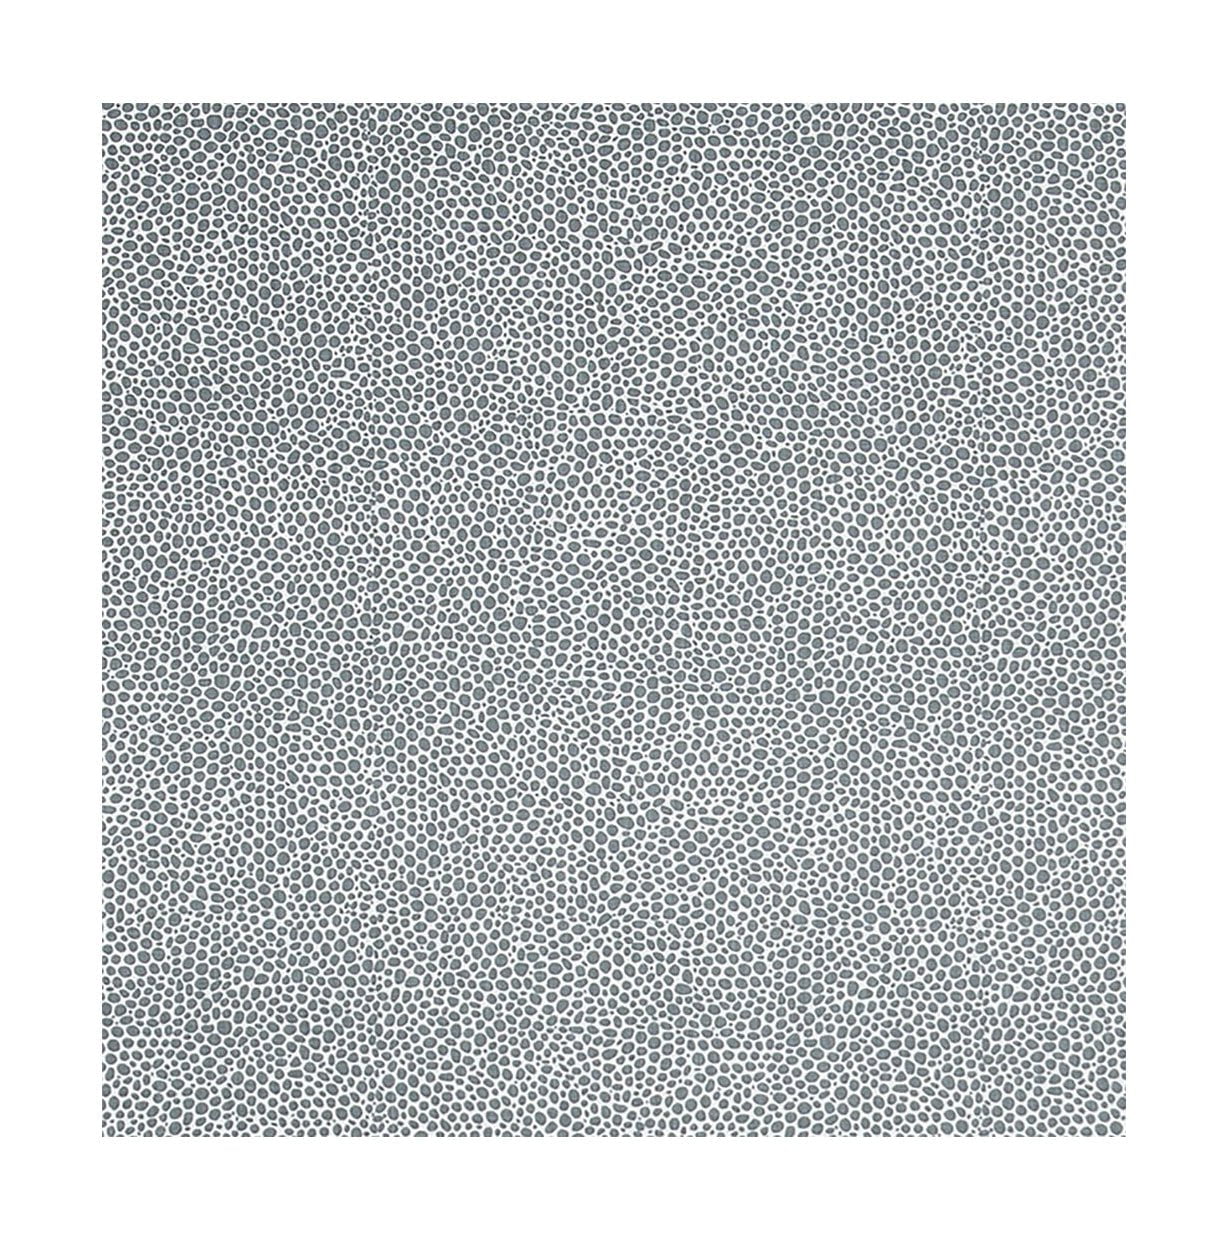 Spira dotte CTC -stof met acrylbreedte 145 cm (prijs per meter), rookblauw